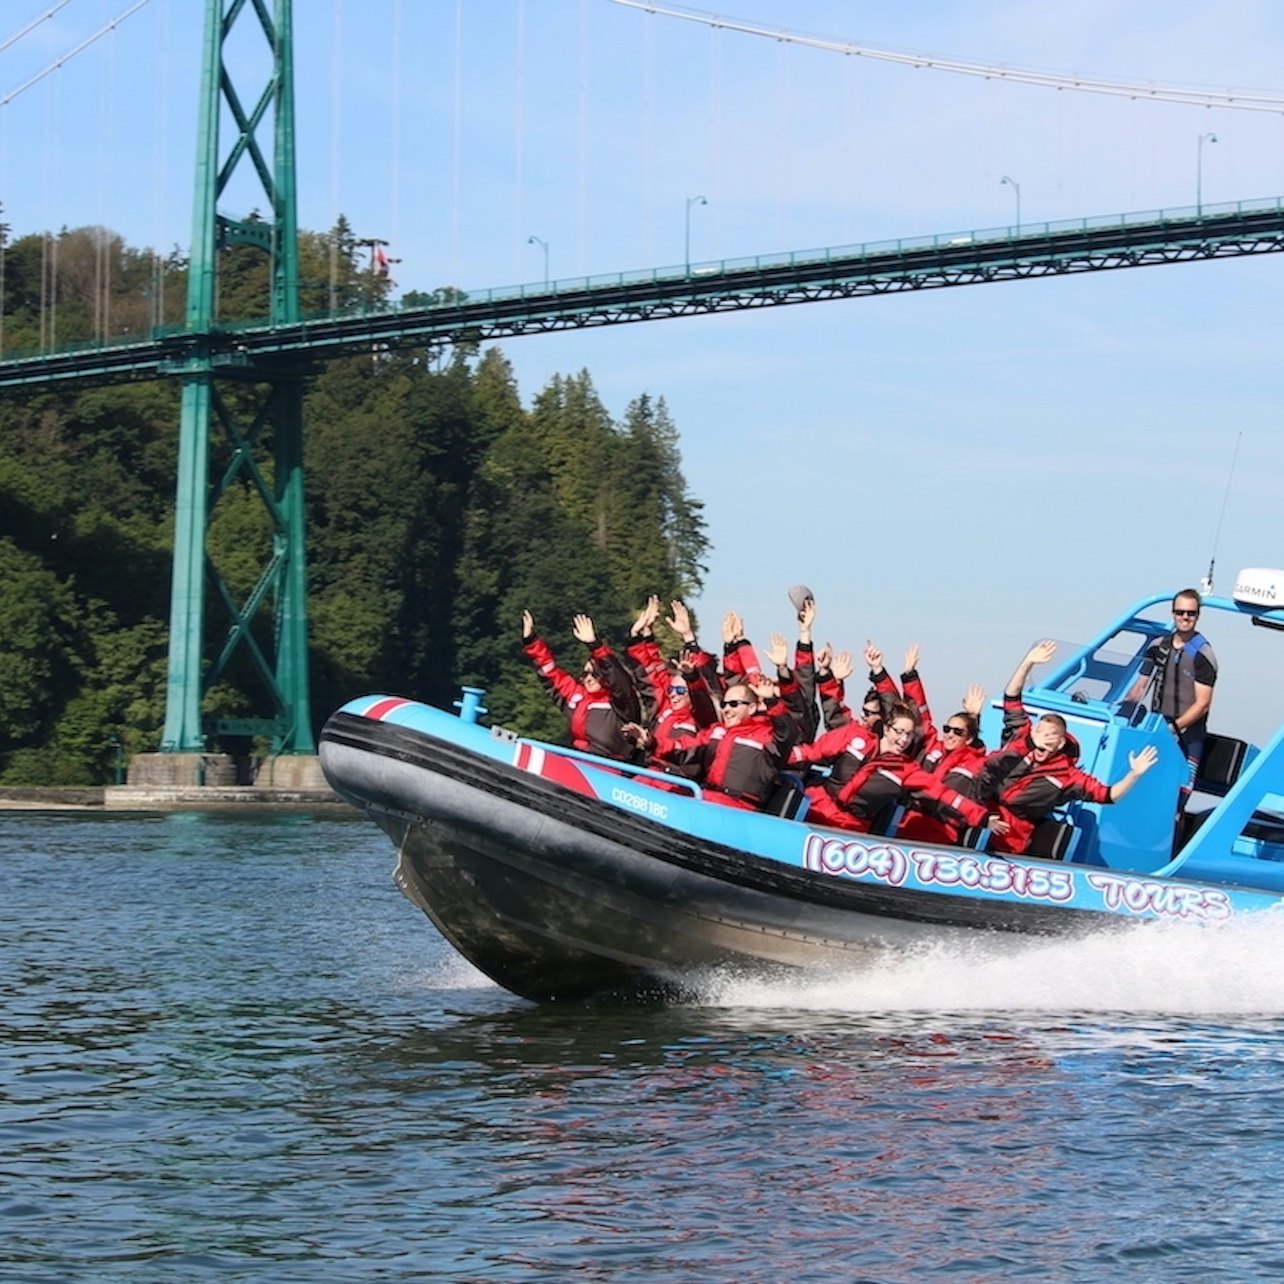 Cruzeiro para ver focas e a cidade a partir de Vancouver - Acomodações em Vancouver